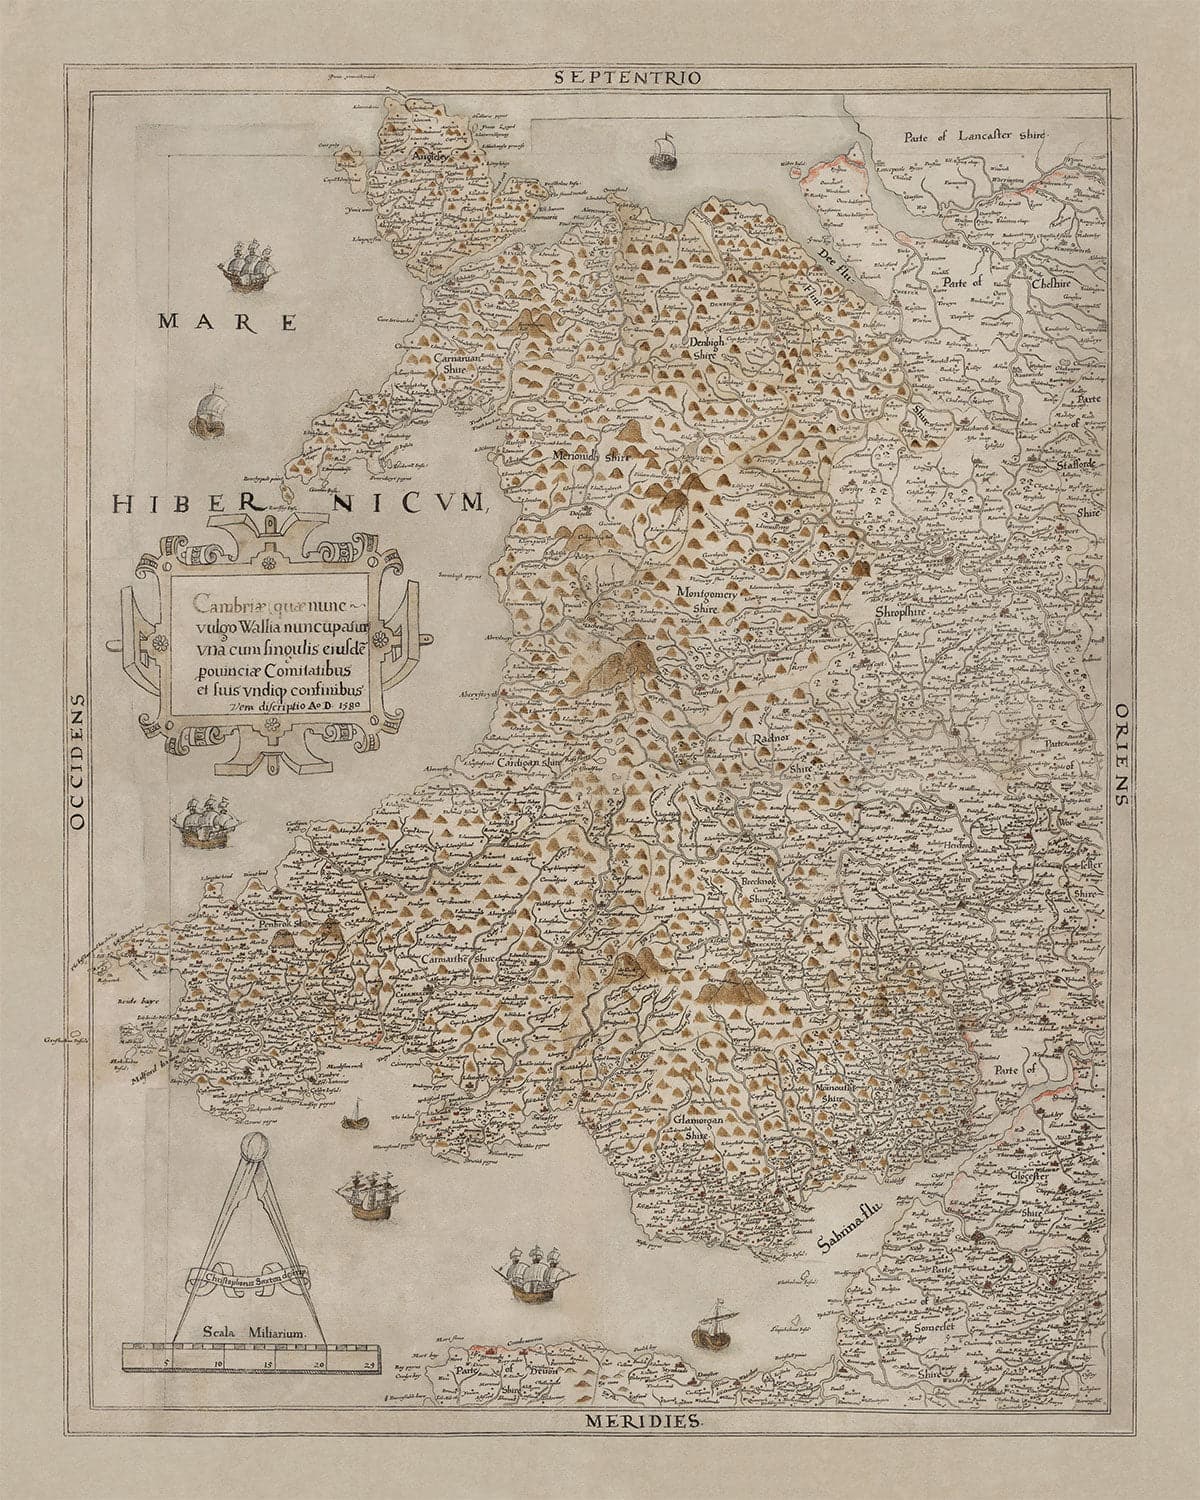 Mapa antiguo de Gales, Cymru de Christopher Saxton en 1580 - primer mapa preciso de Gales